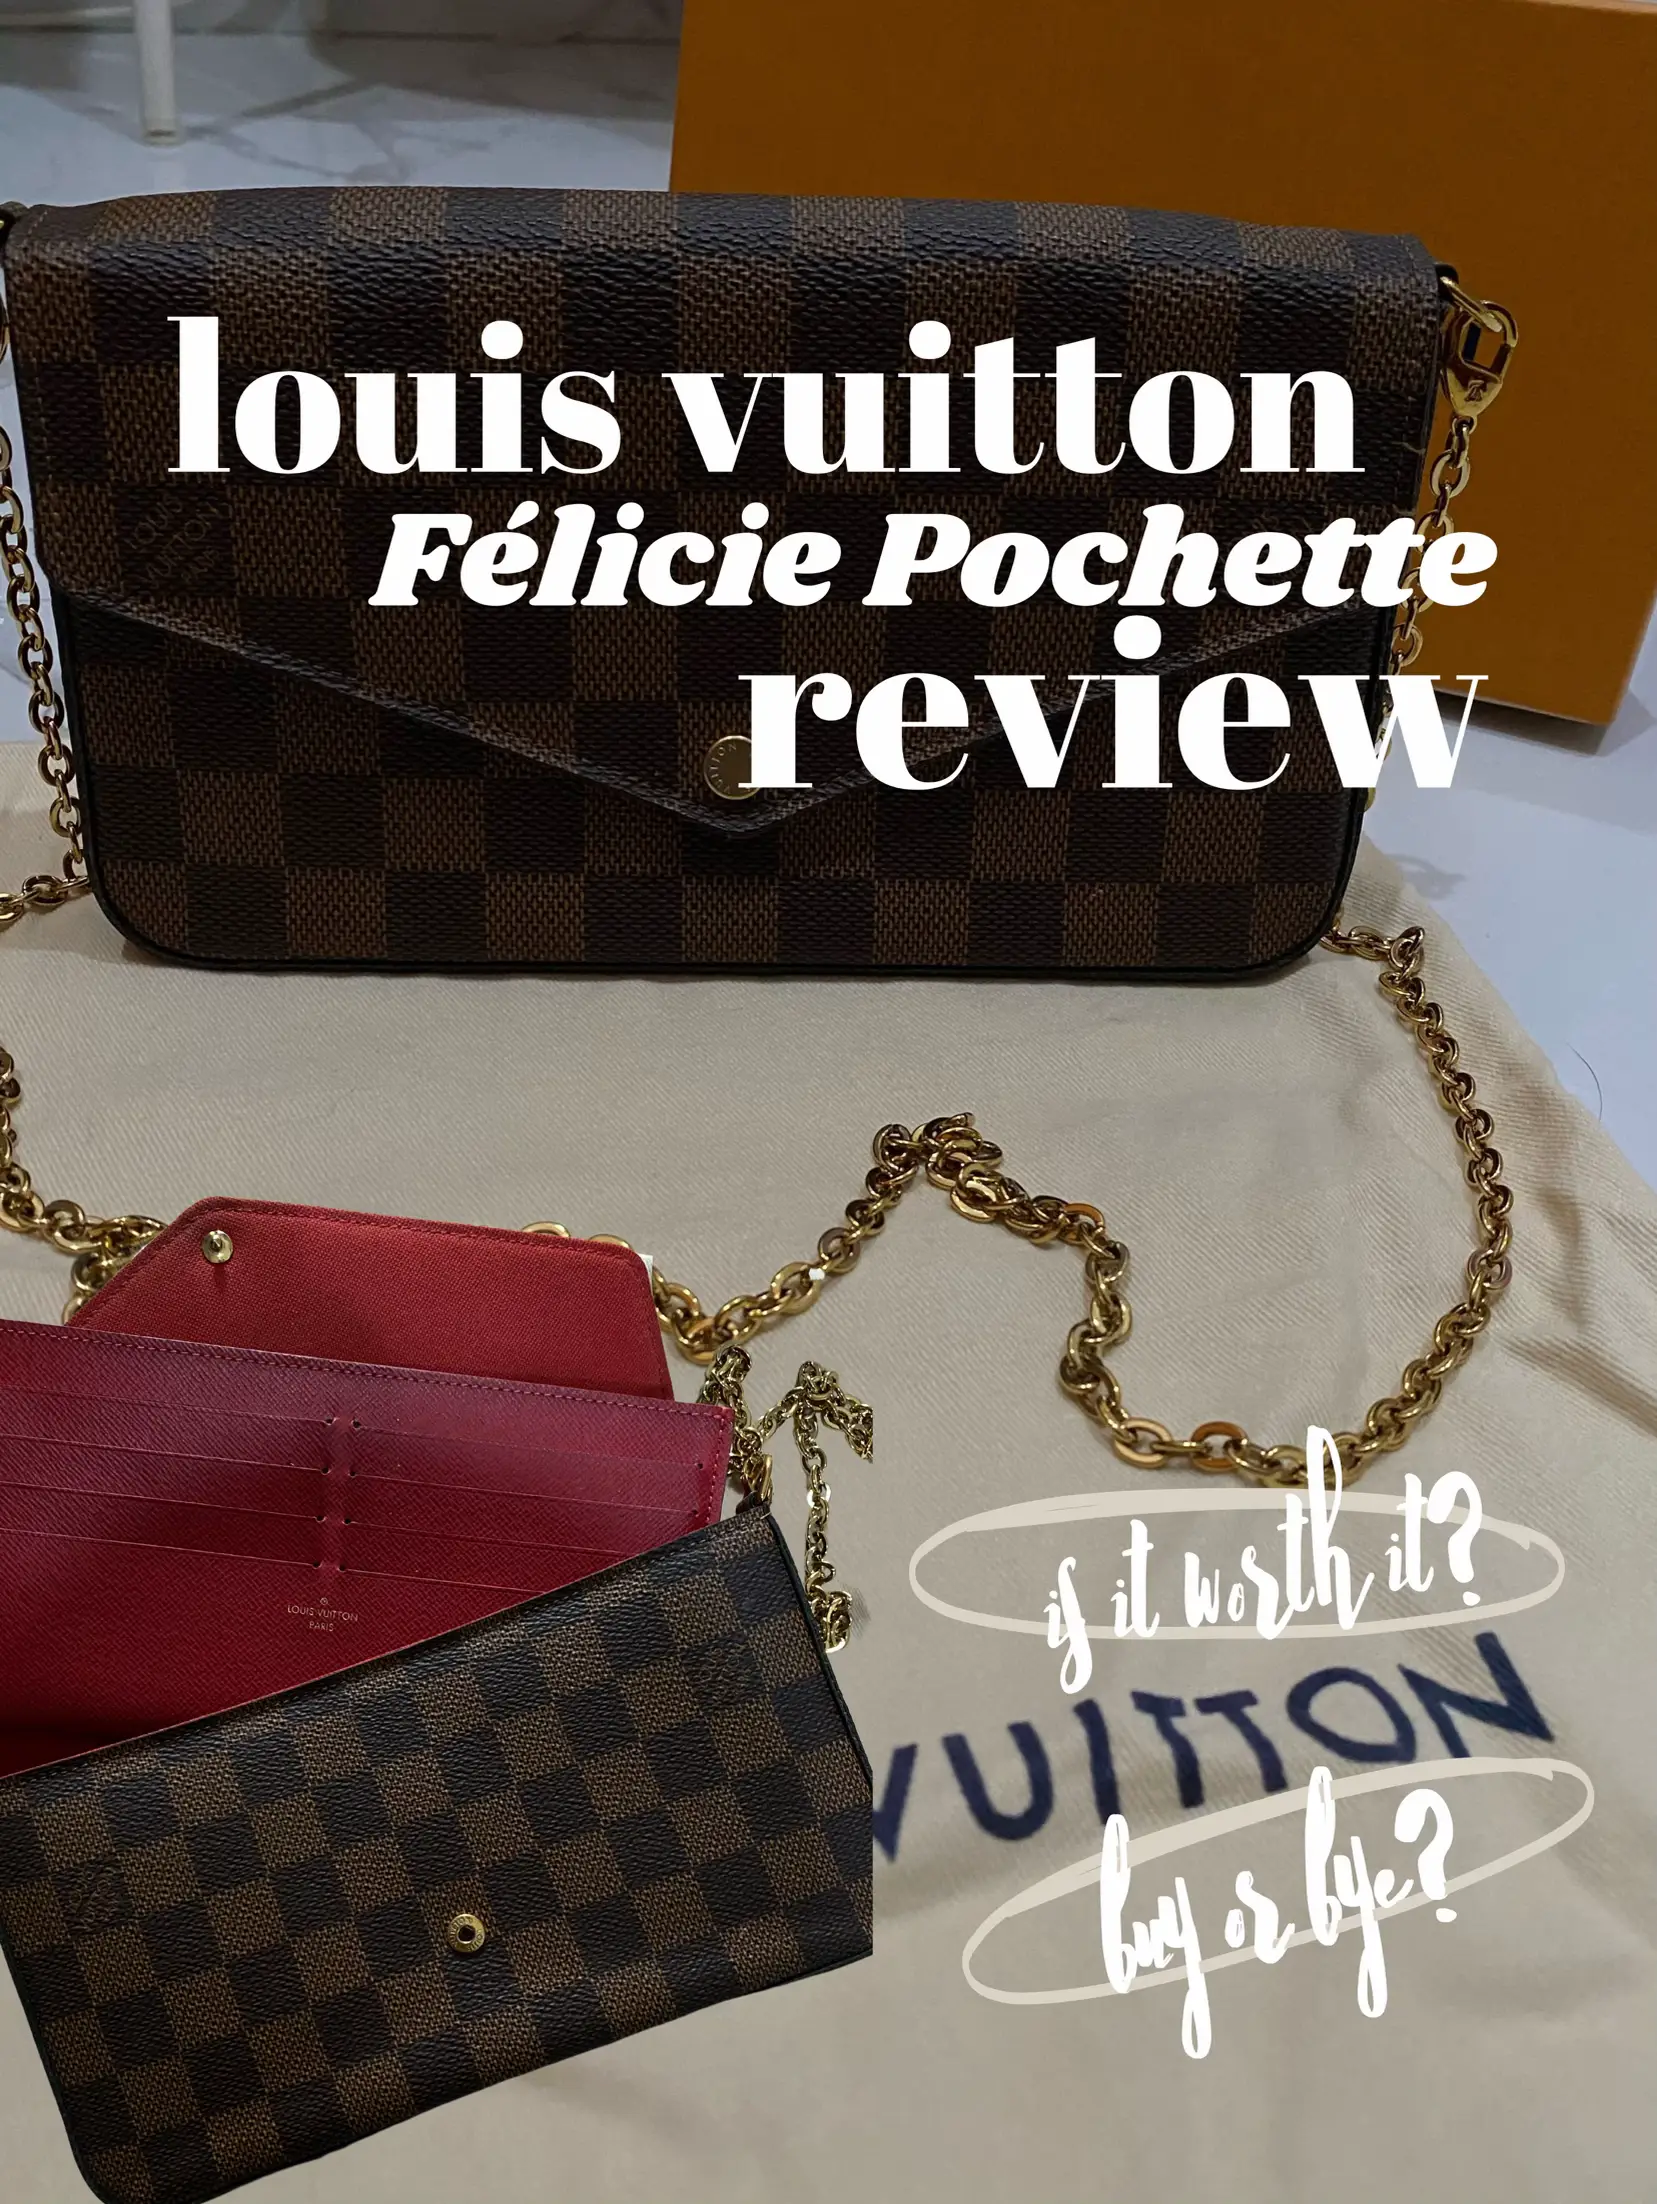 Louis Vuitton Blois review 